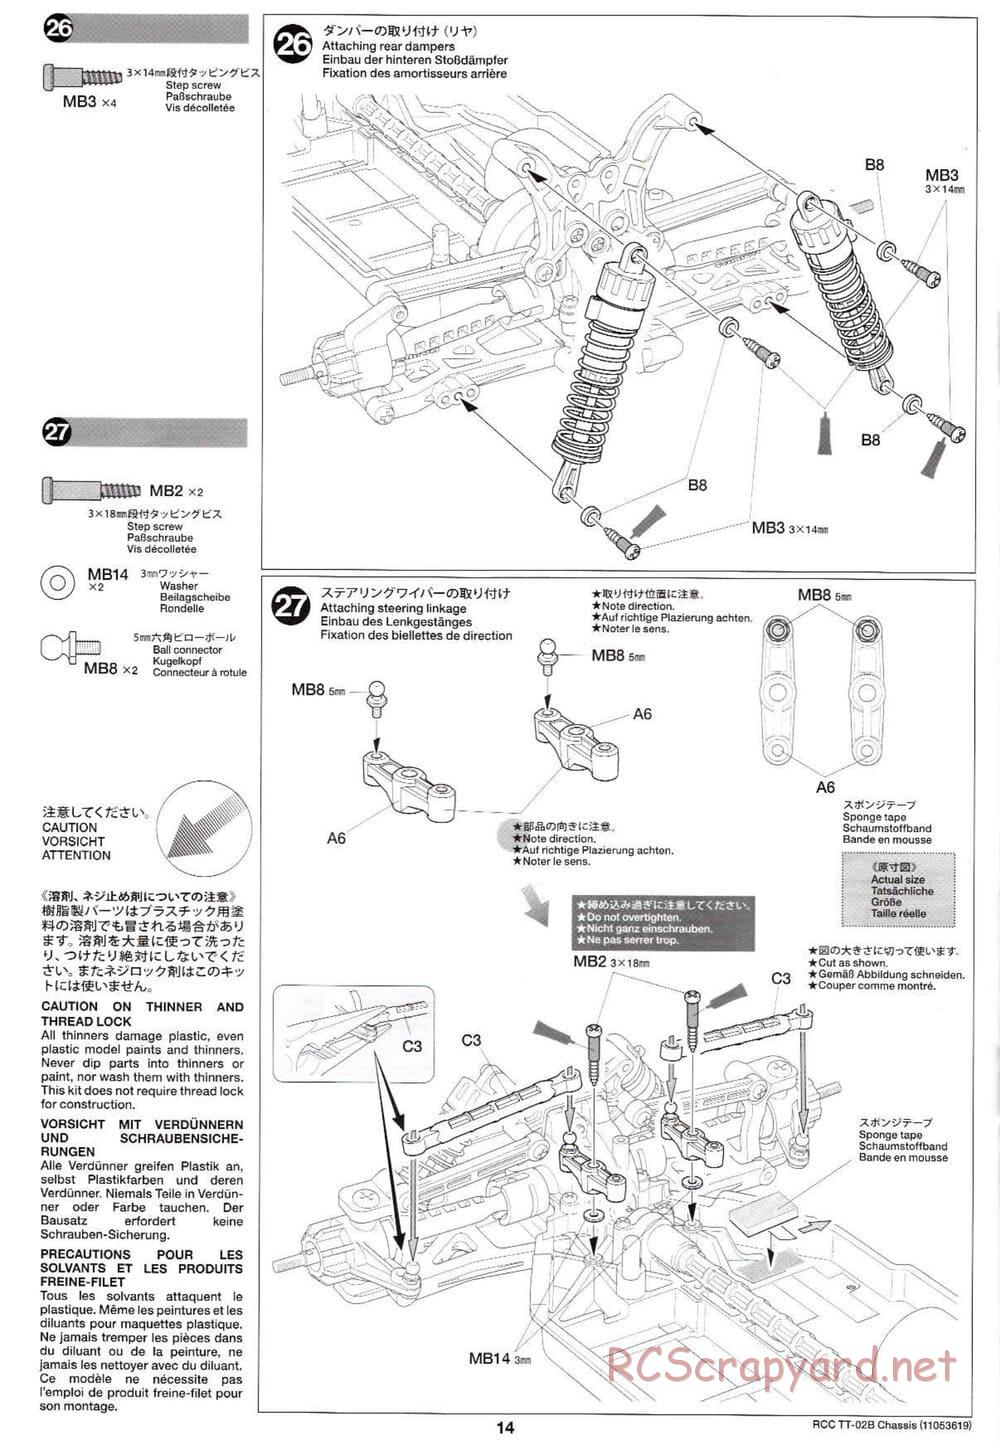 Tamiya - TT-02B Chassis - Manual - Page 18